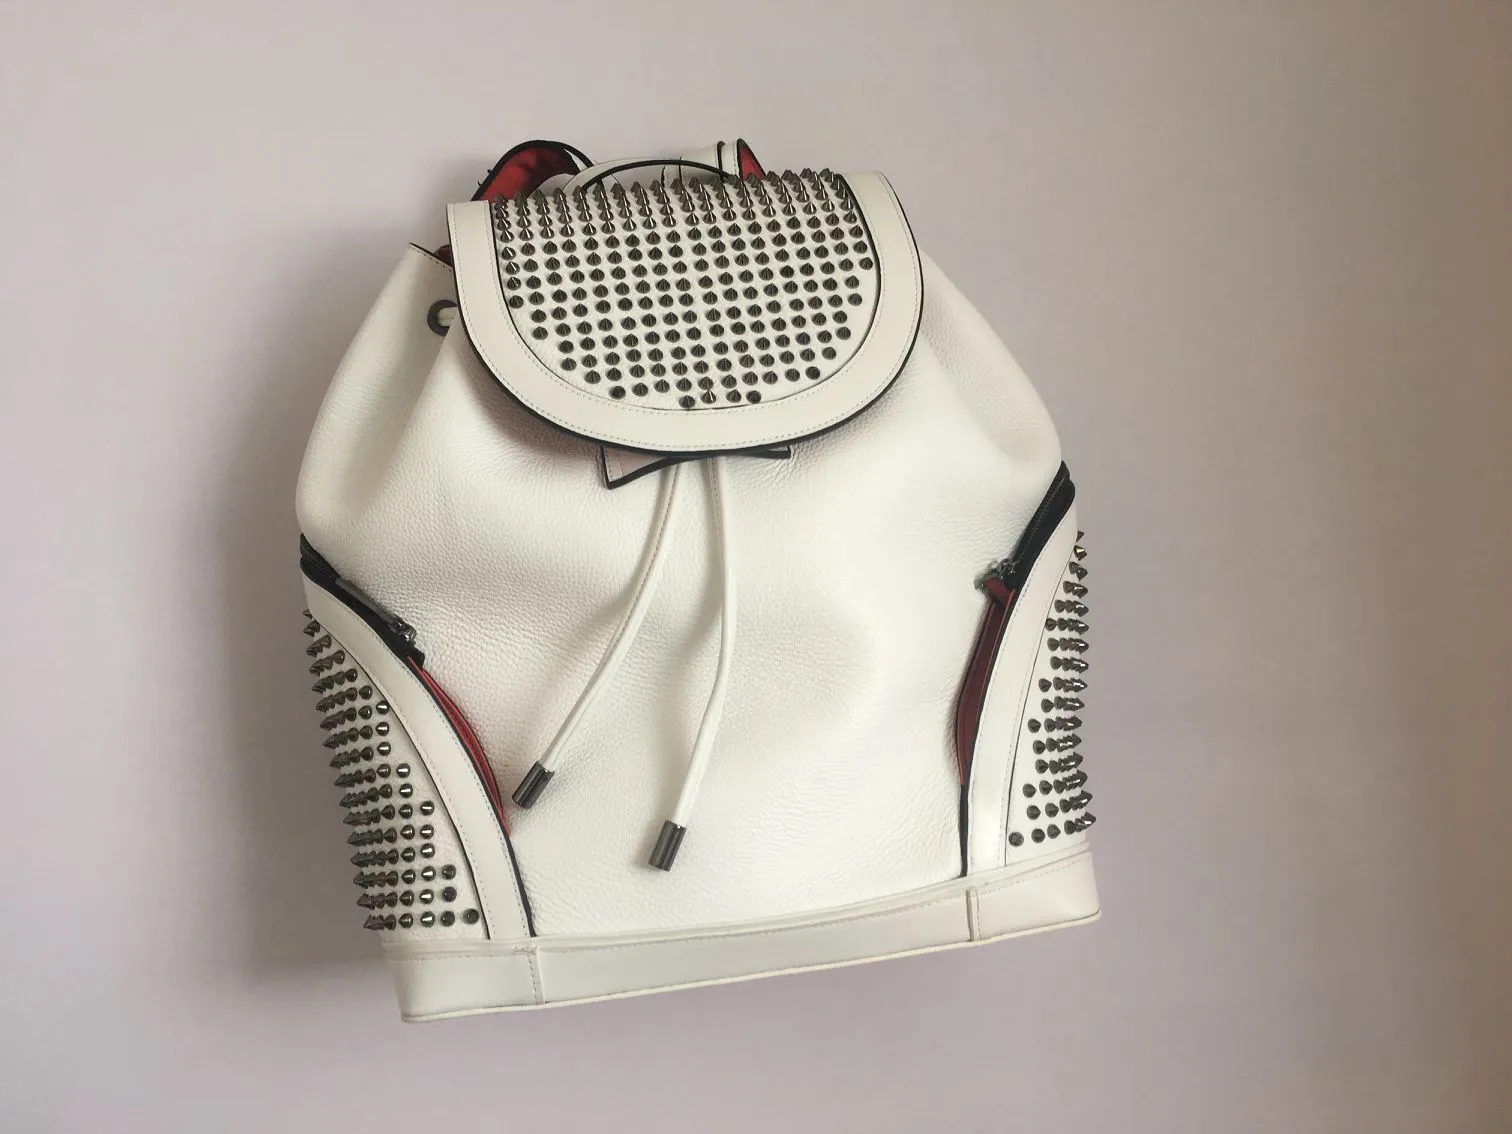 Najlepsze nowe modne plecak luksusowy projektant torebek Wysokiej jakości miłośnicy torby szkolna torebki mody stadded nity